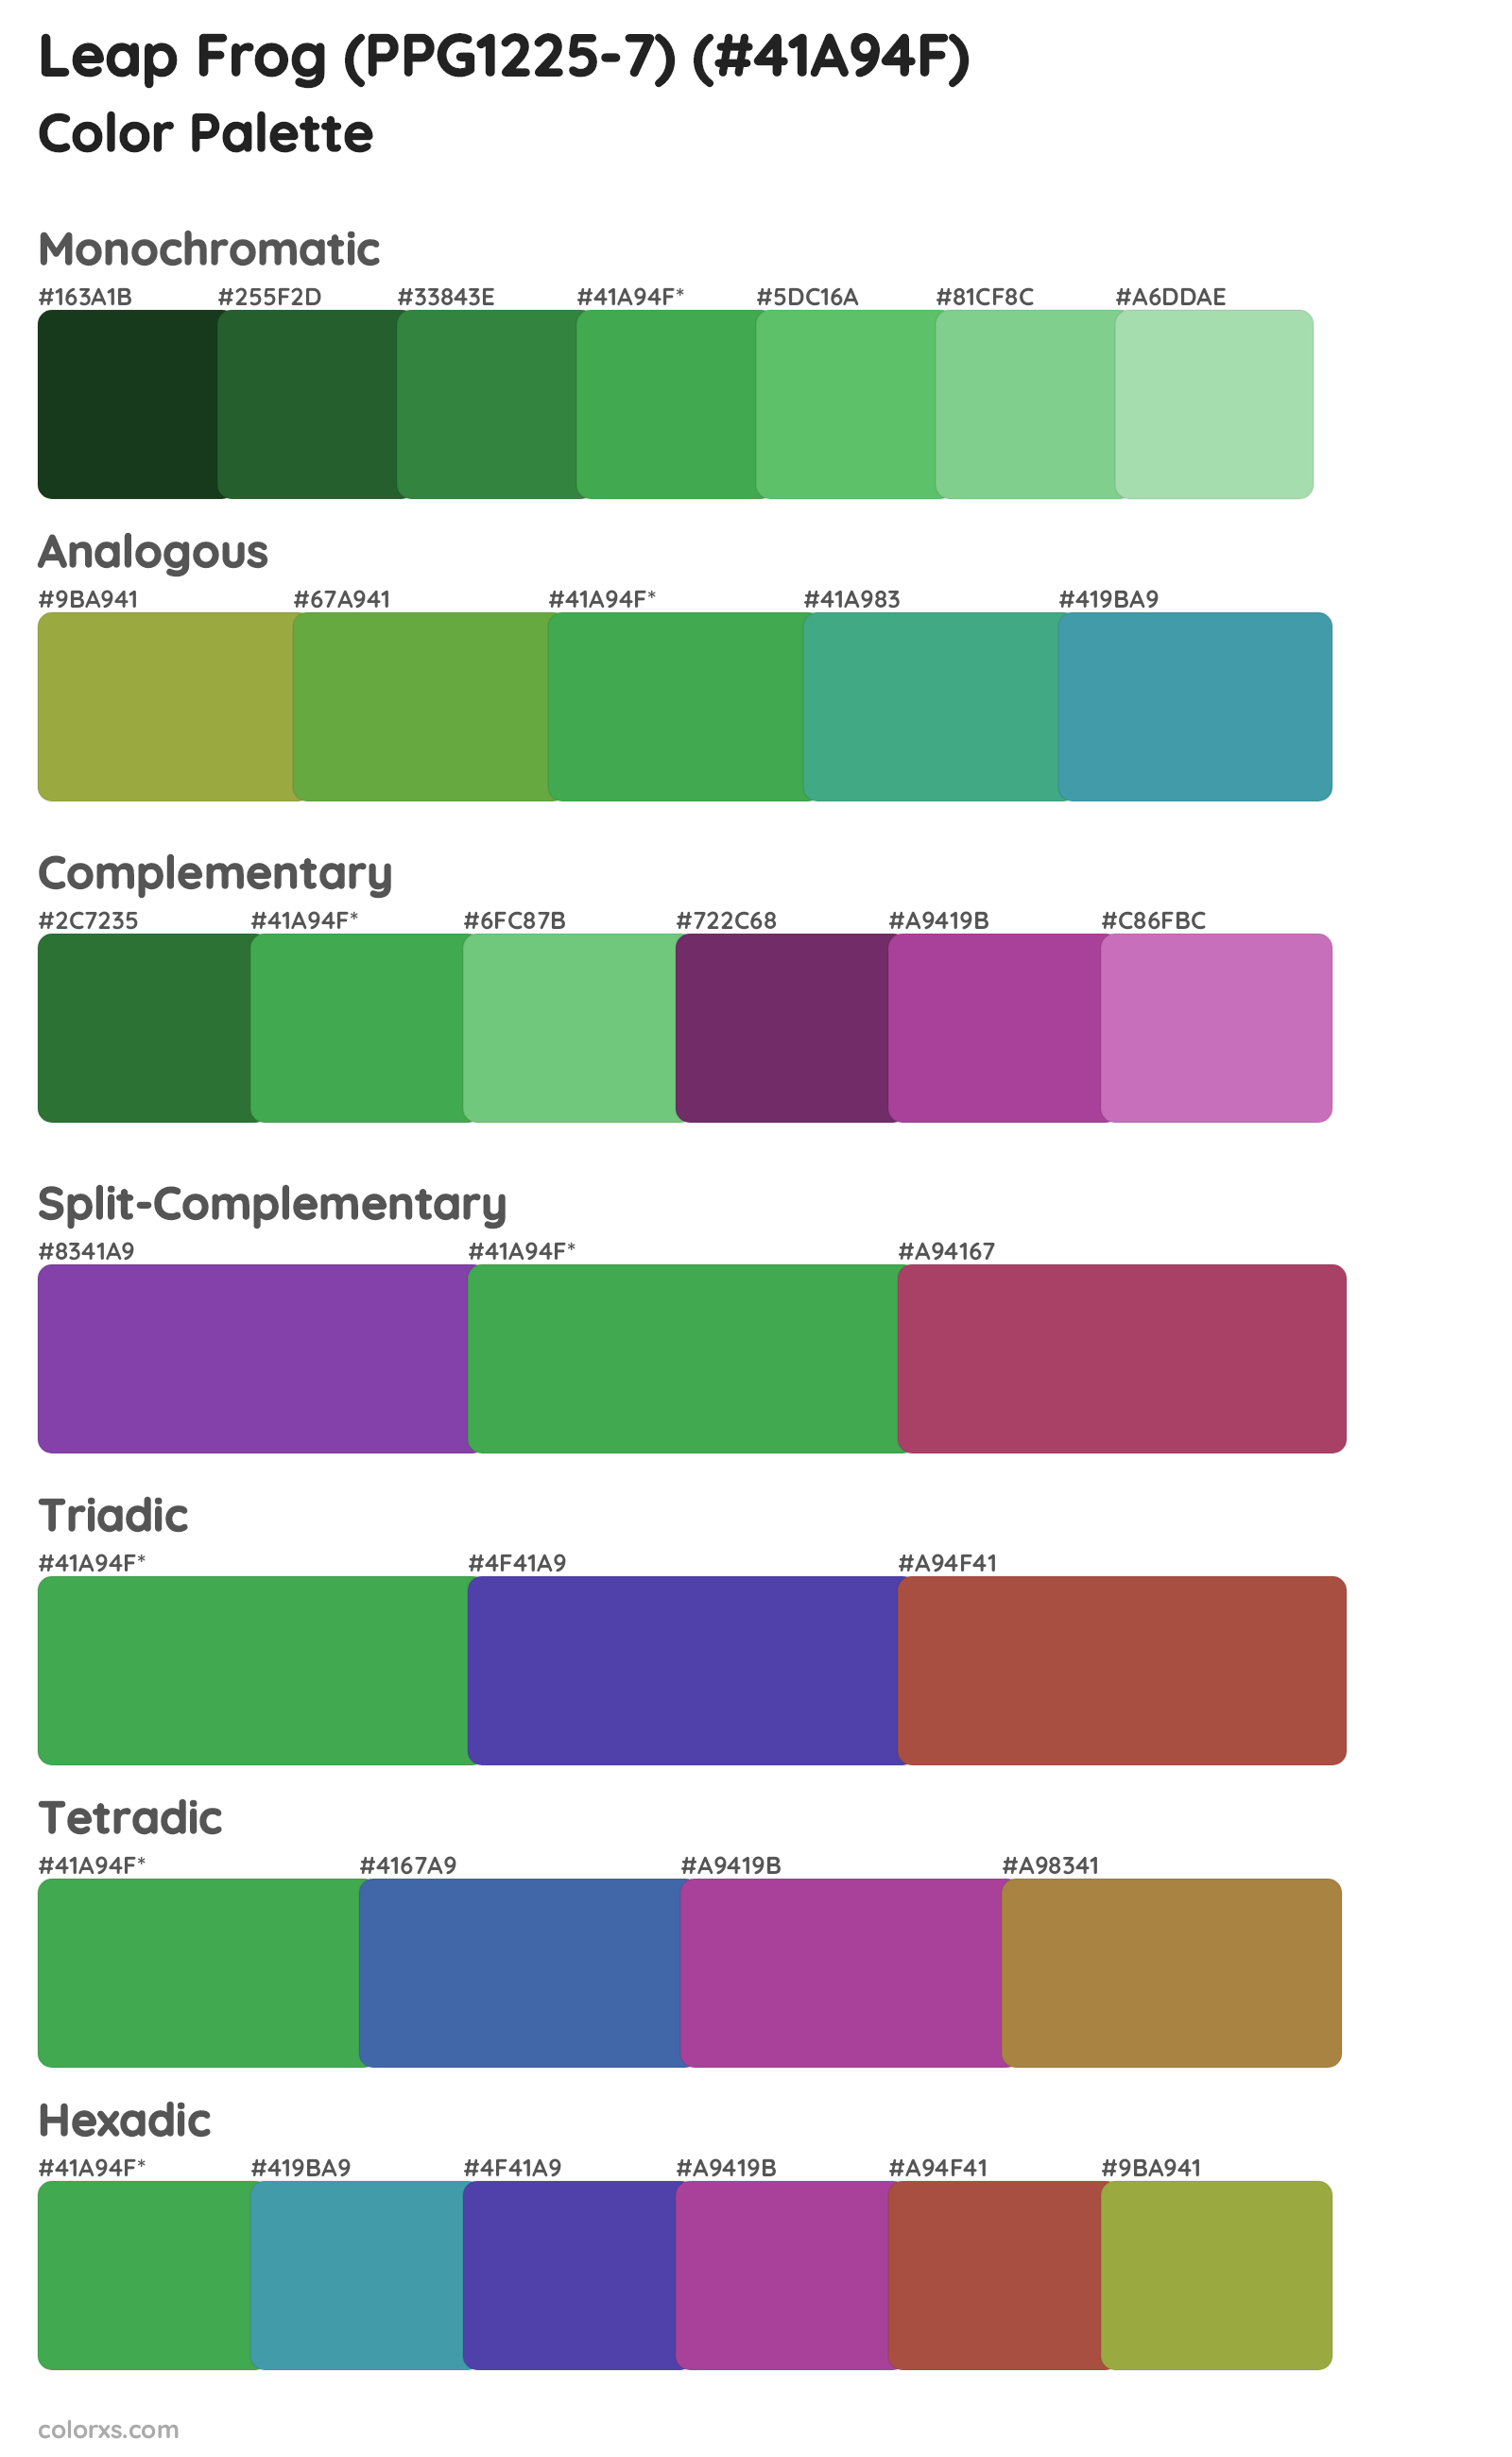 Leap Frog (PPG1225-7) Color Scheme Palettes